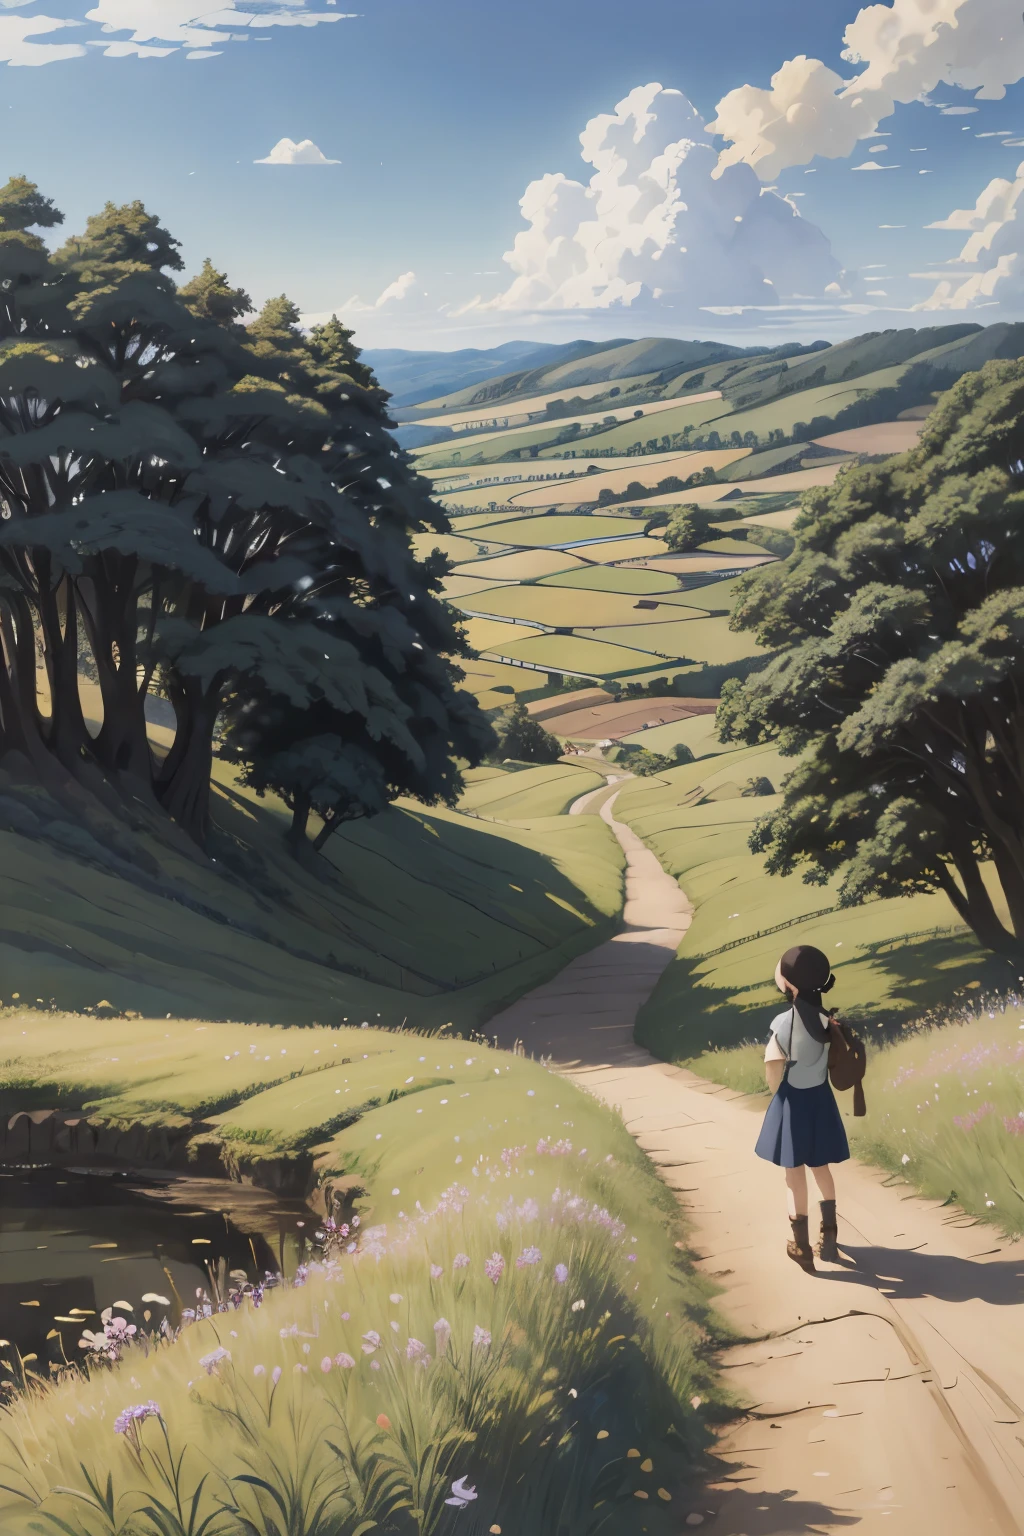 實際的, 真實的, 美麗驚豔的風景油畫 吉卜力工作室 宮崎駿 花瓣 草原 藍天 草原 鄉村小路,大樓, 美麗的女孩